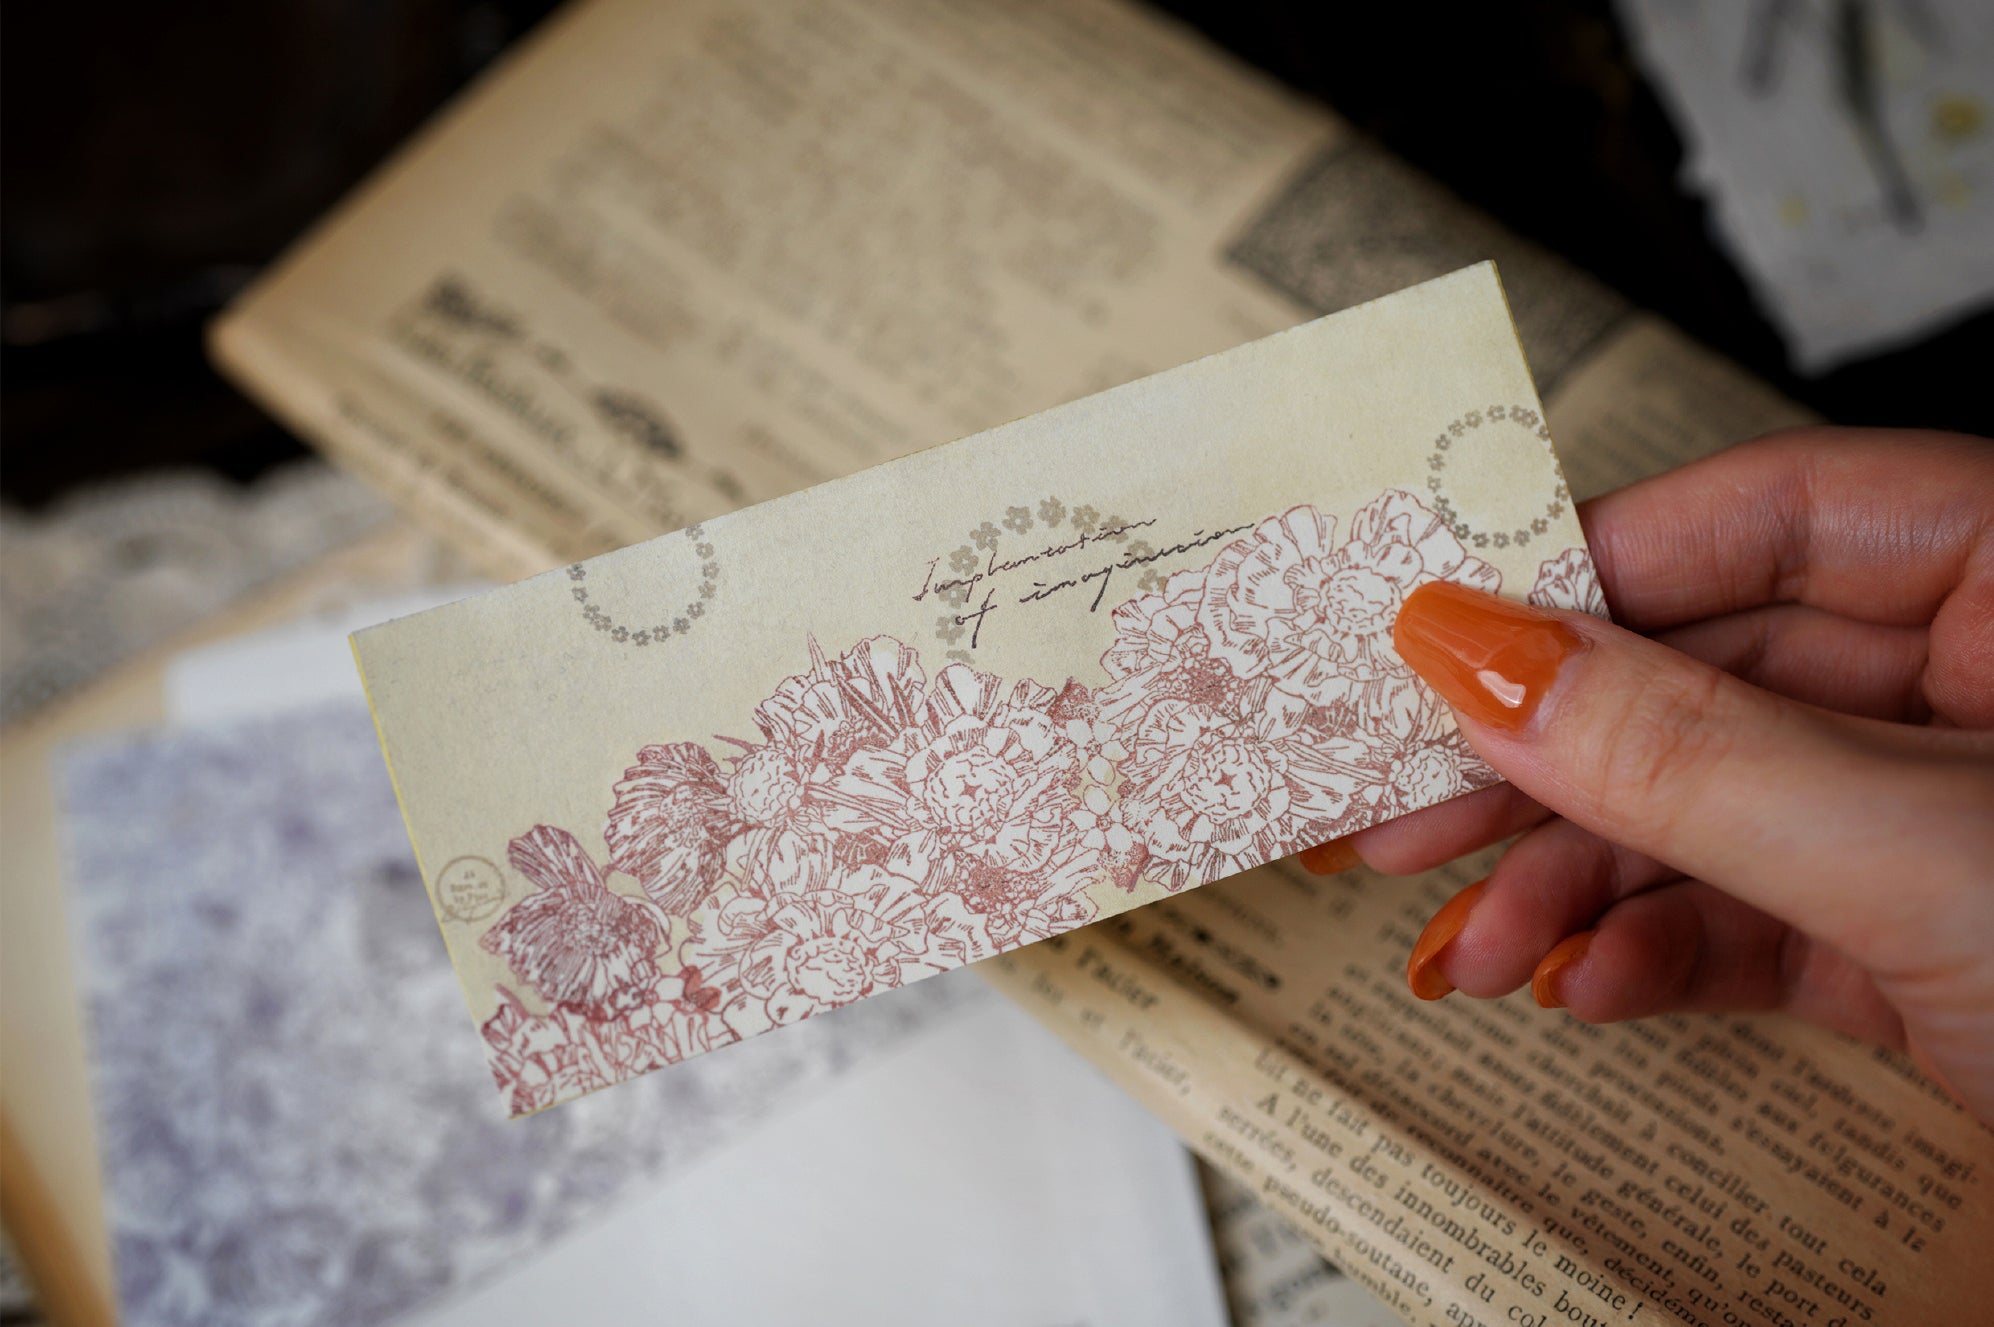 Benchu Studio: Flower Illustration Stamps Set